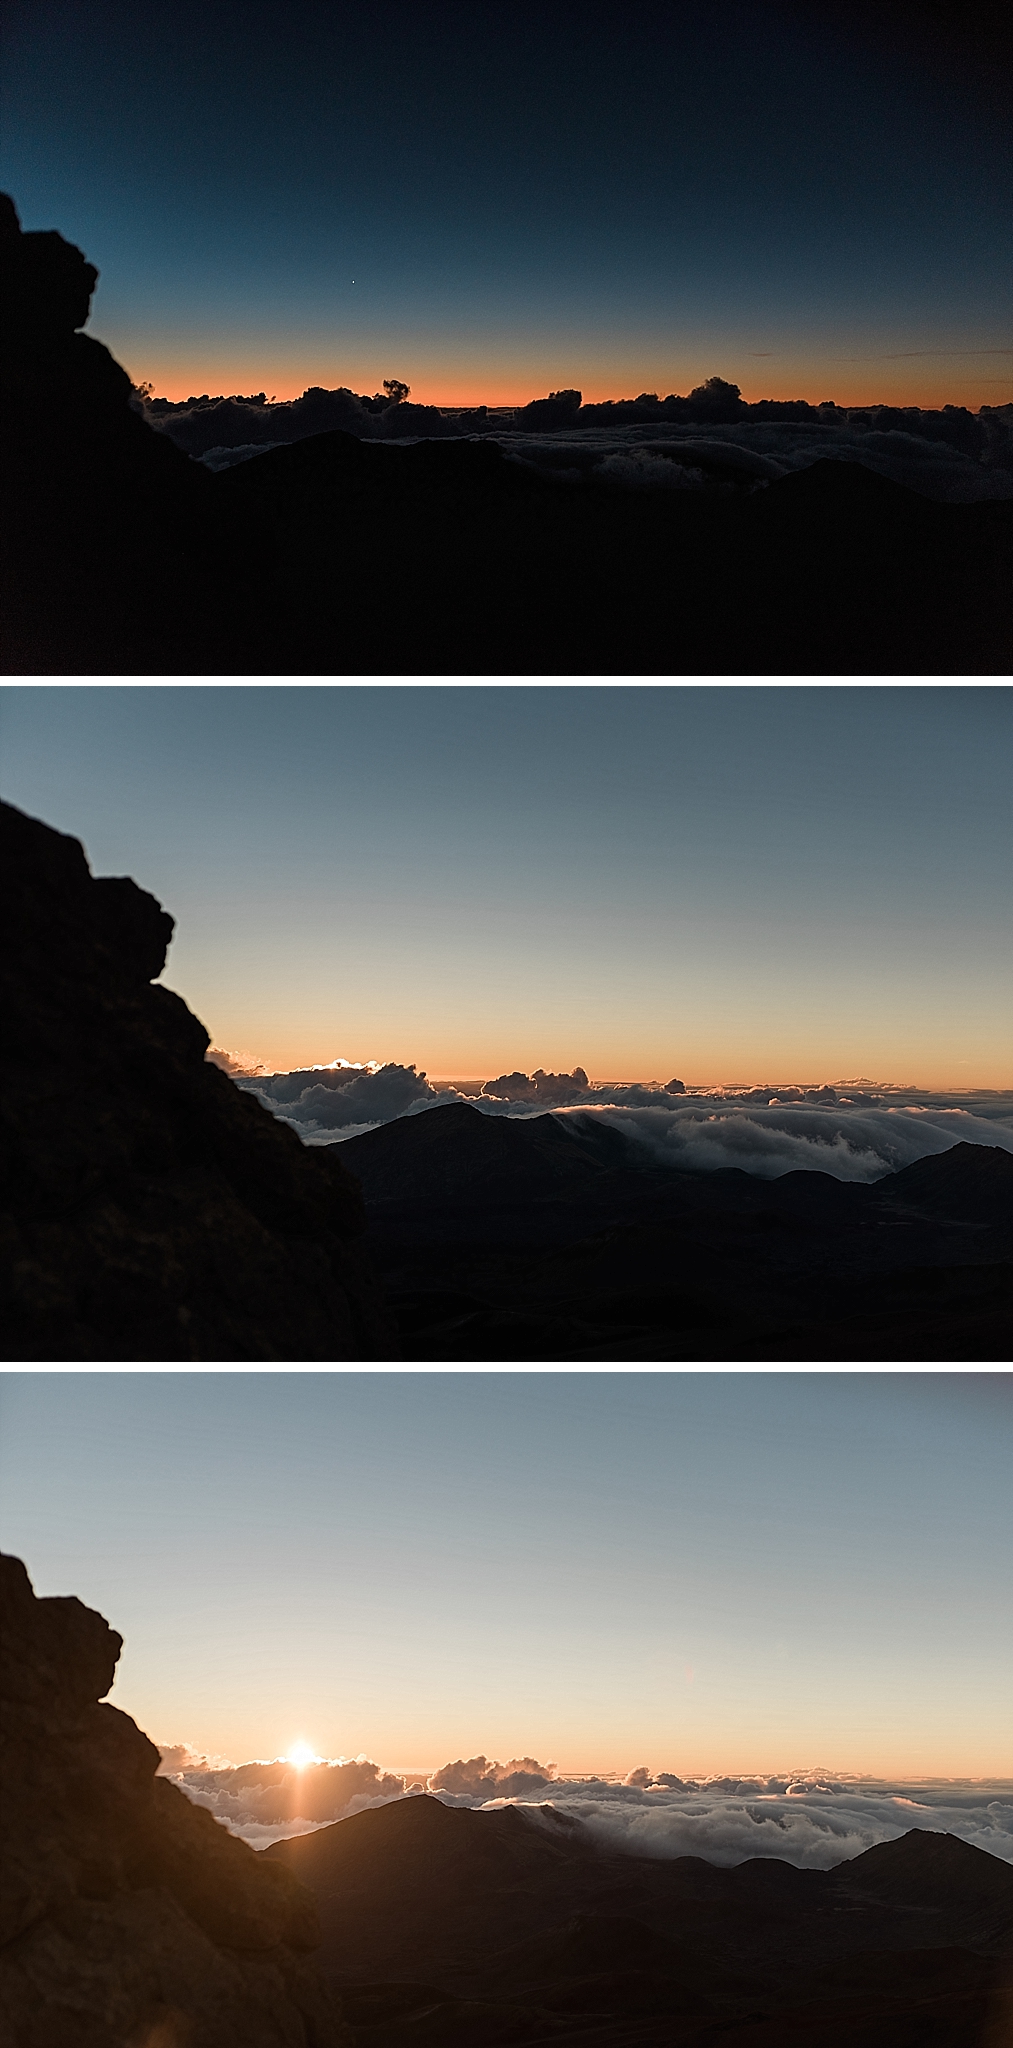 sunrise at Haleakala national park